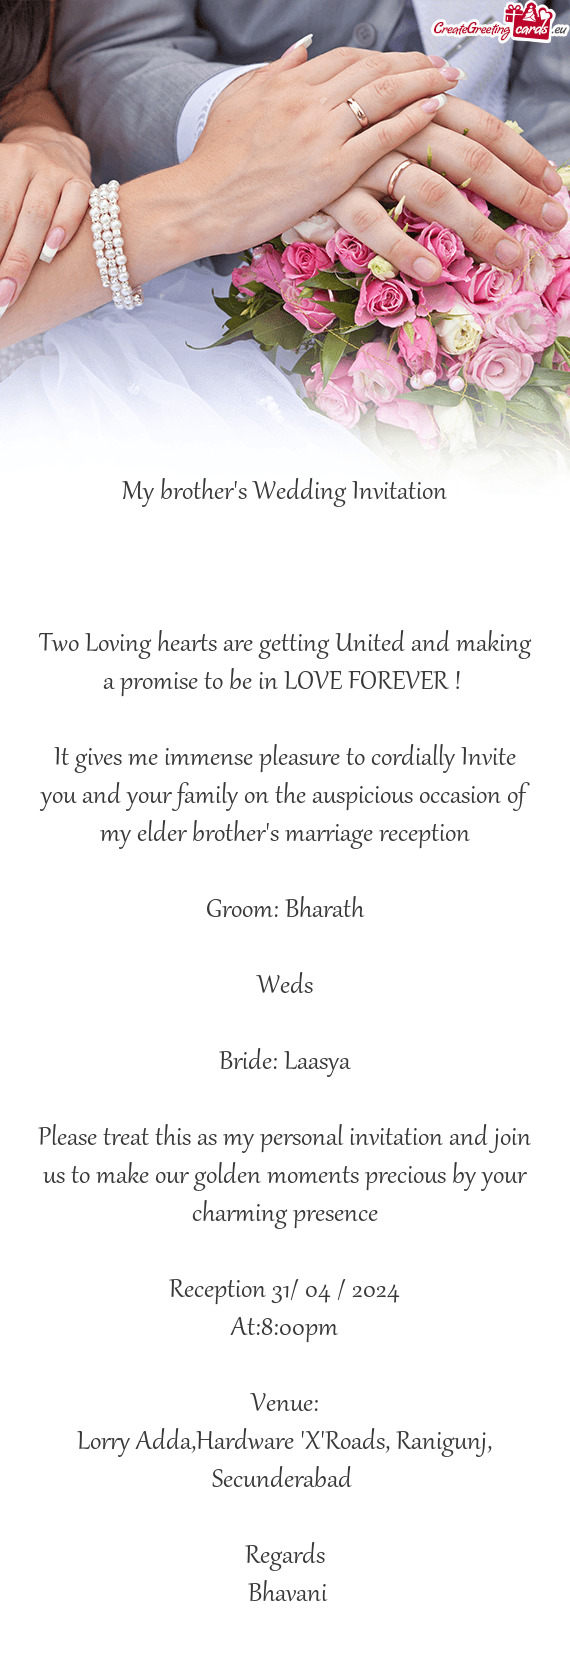 Bharath Weds Bride